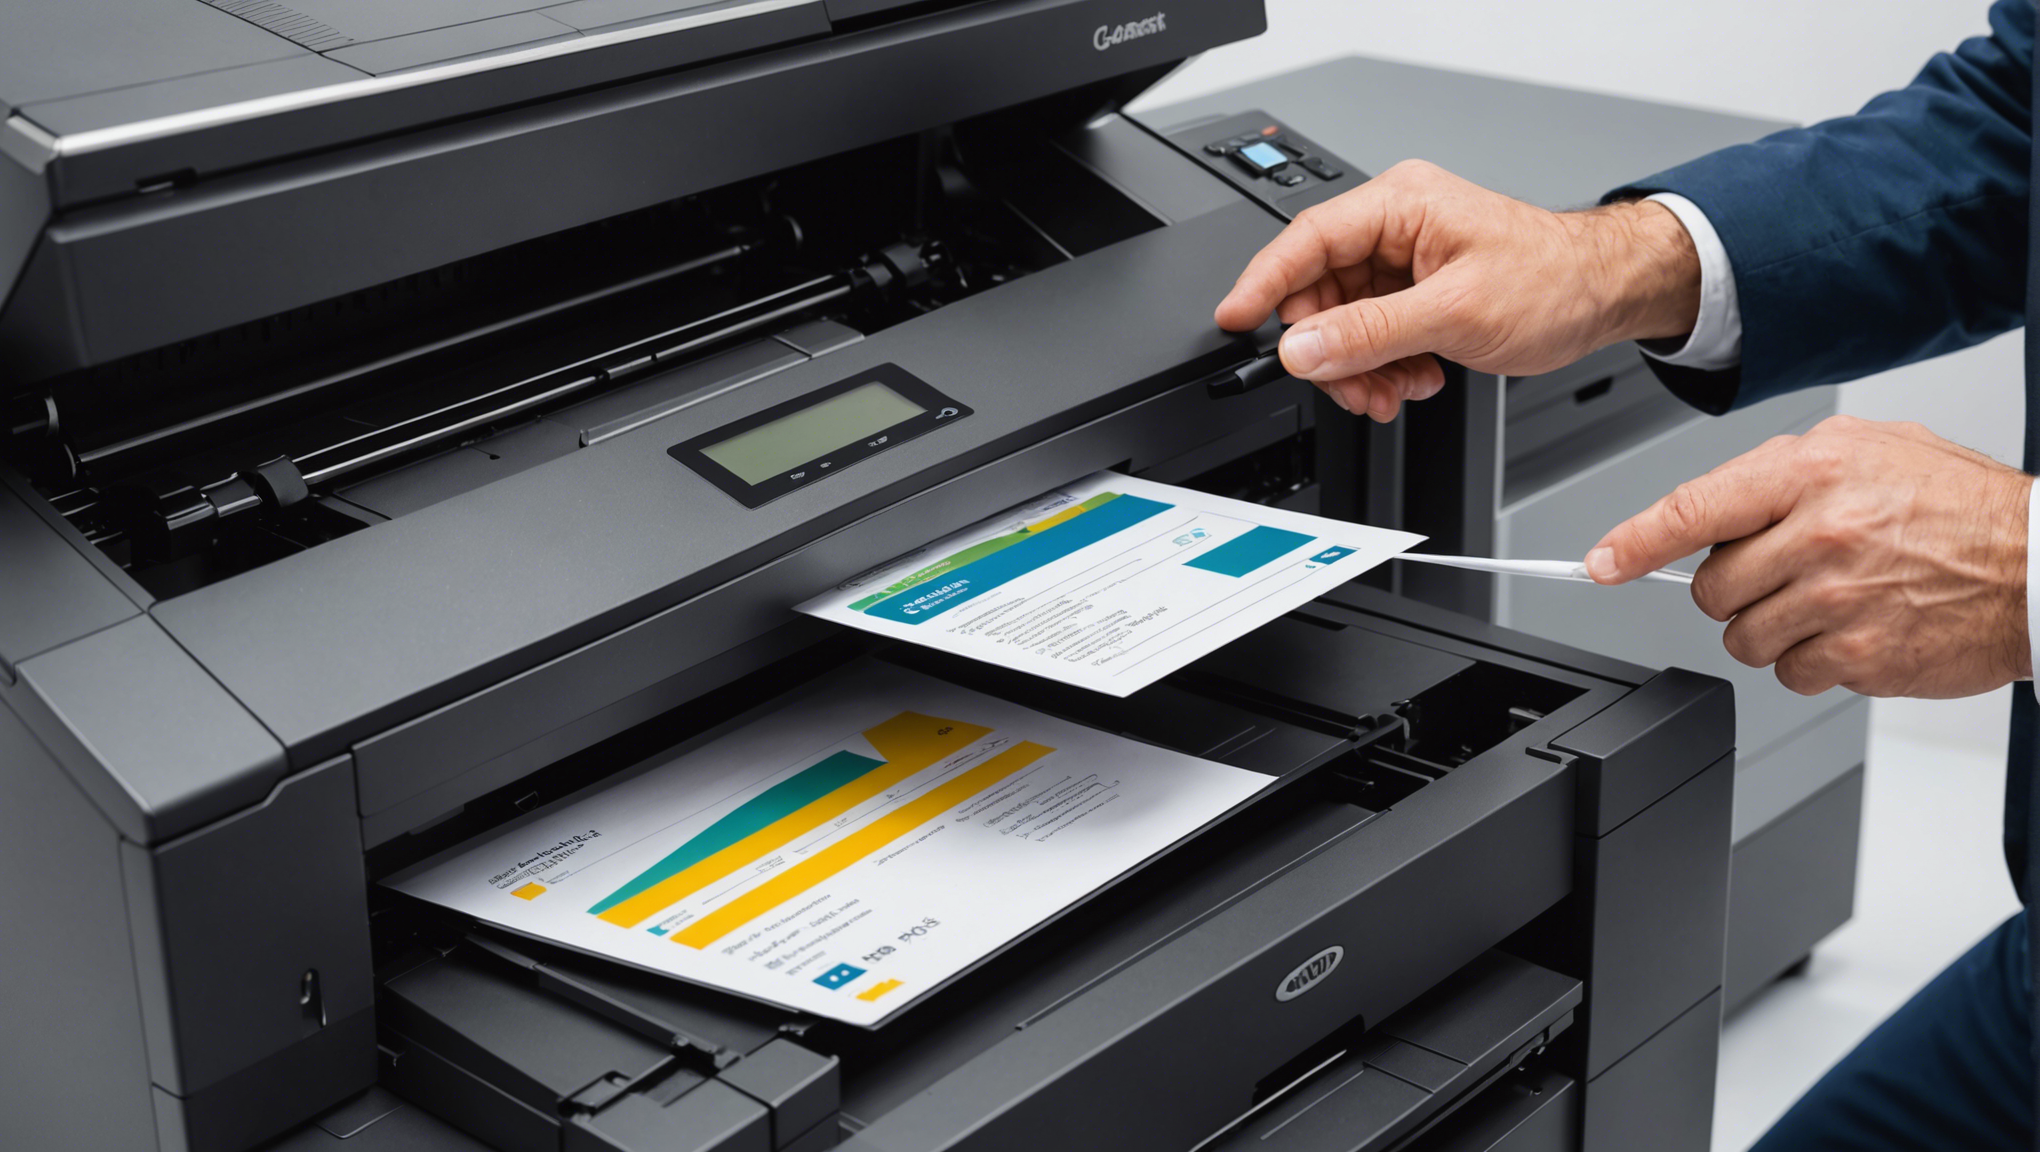 découvrez les caractéristiques des imprimantes professionnelles abordables. qualité professionnelle à prix abordable. trouvez votre imprimante parfaite pour votre entreprise.